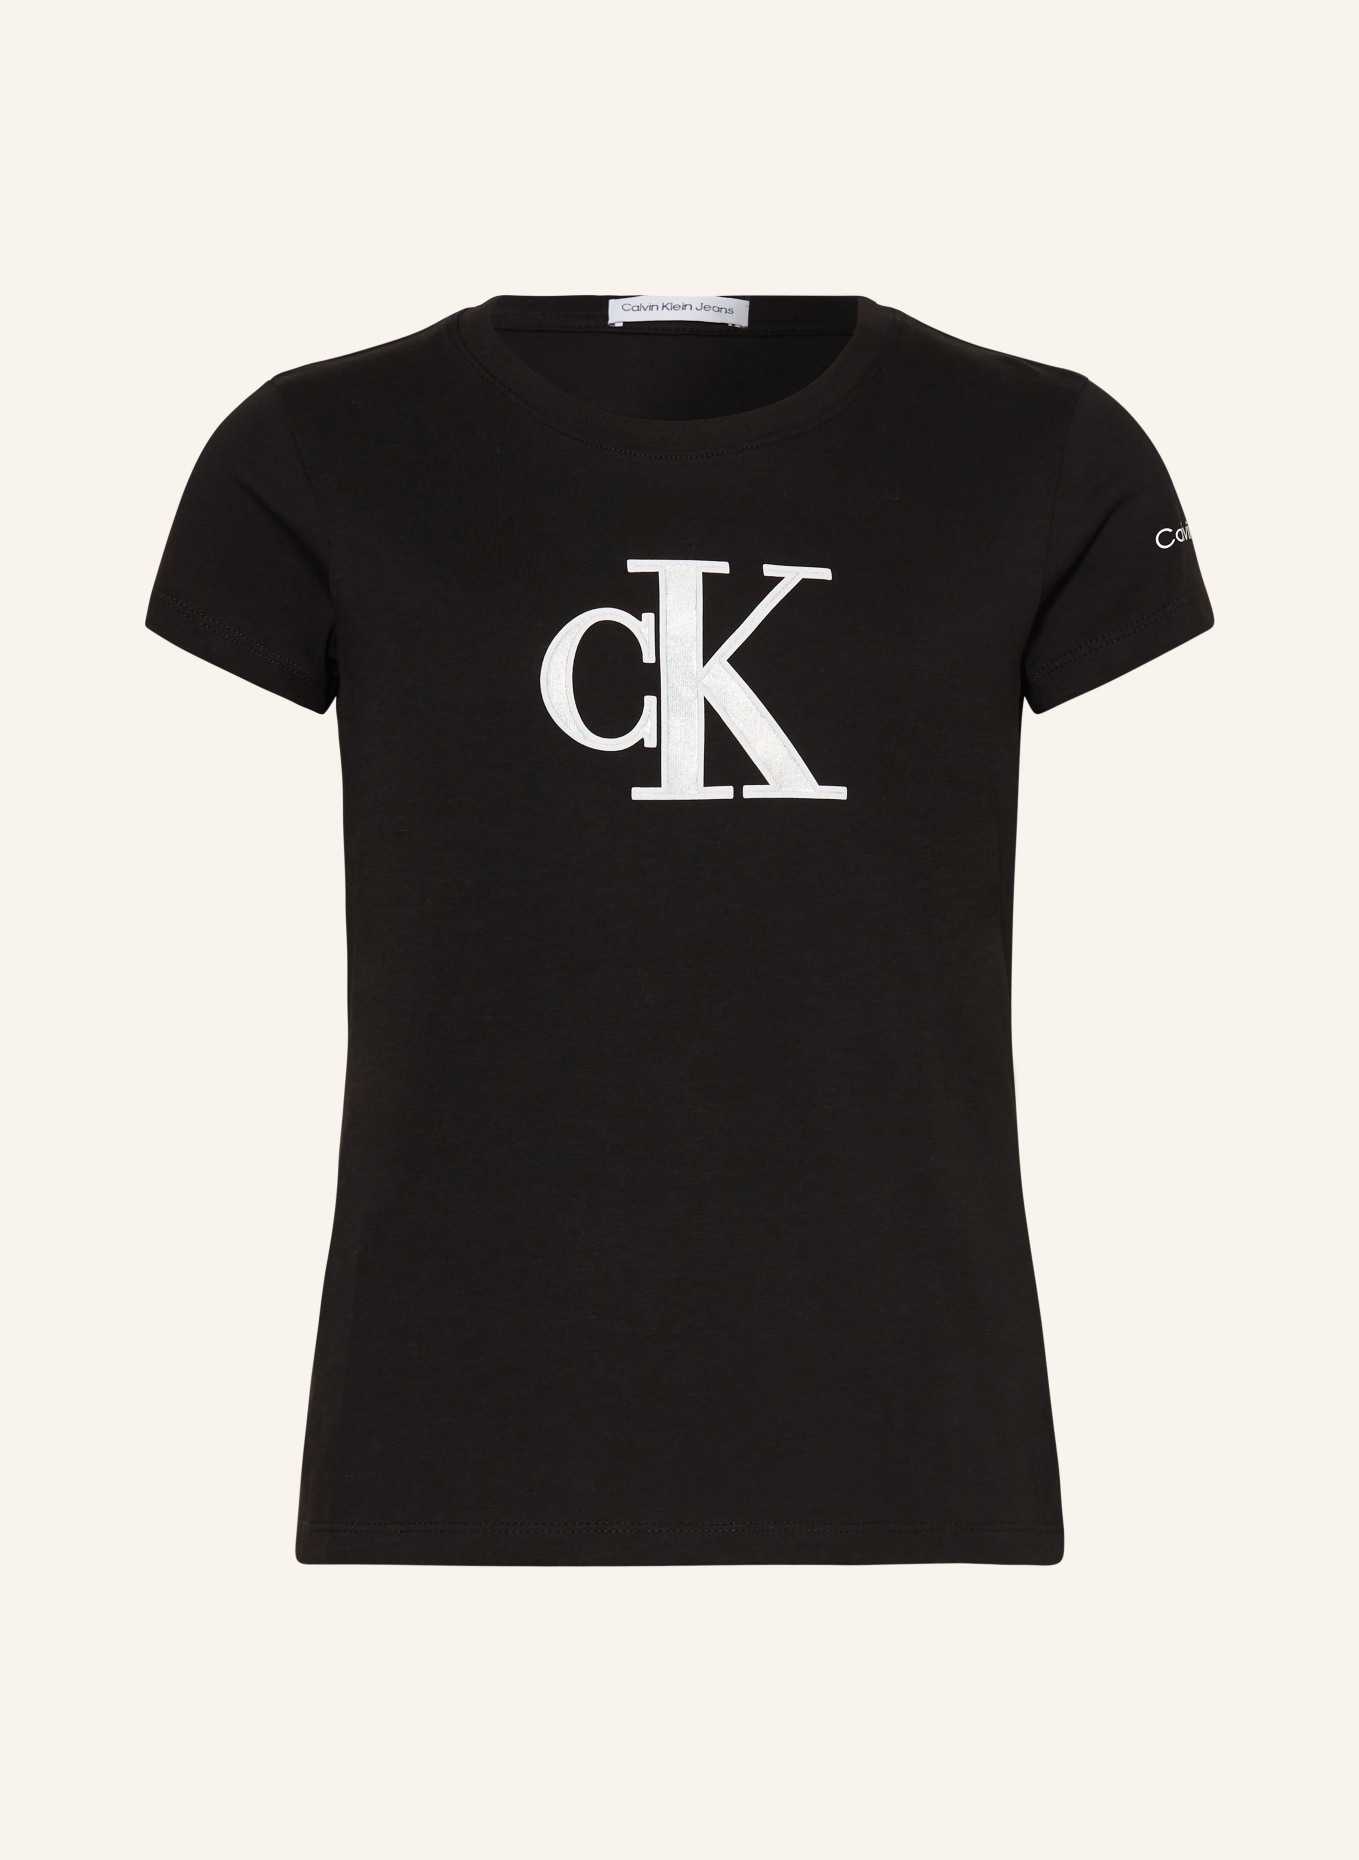 Calvin Klein T-Shirt, Farbe: SCHWARZ/ WEISS (Bild 1)